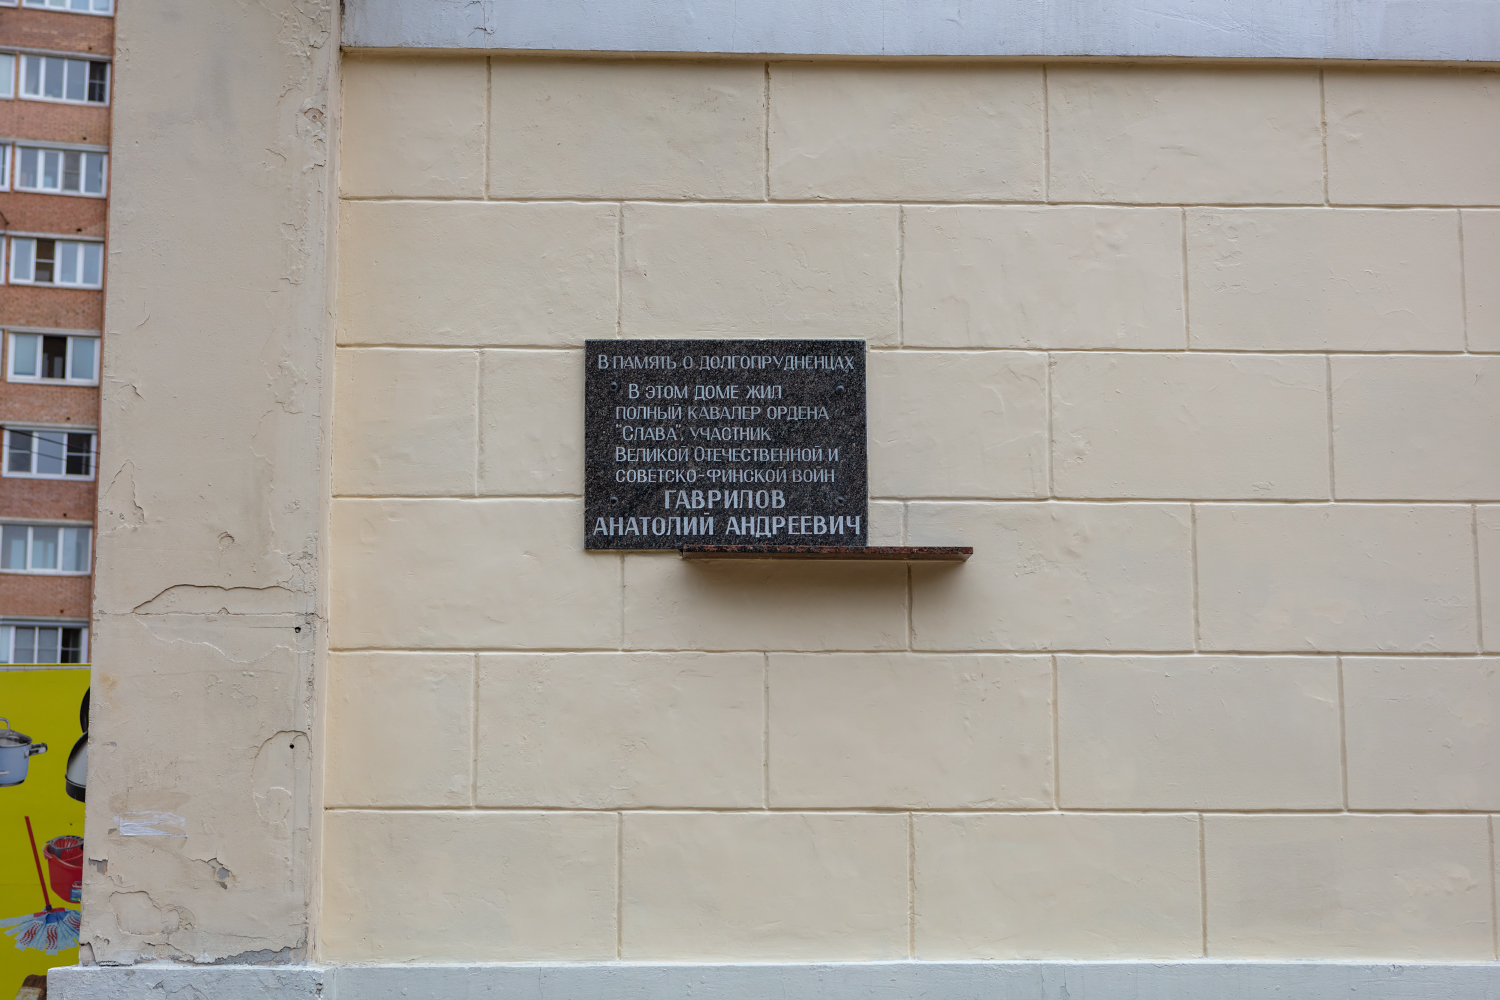 Dolgoprudny, Первомайская улица, 42. Memorial plaques